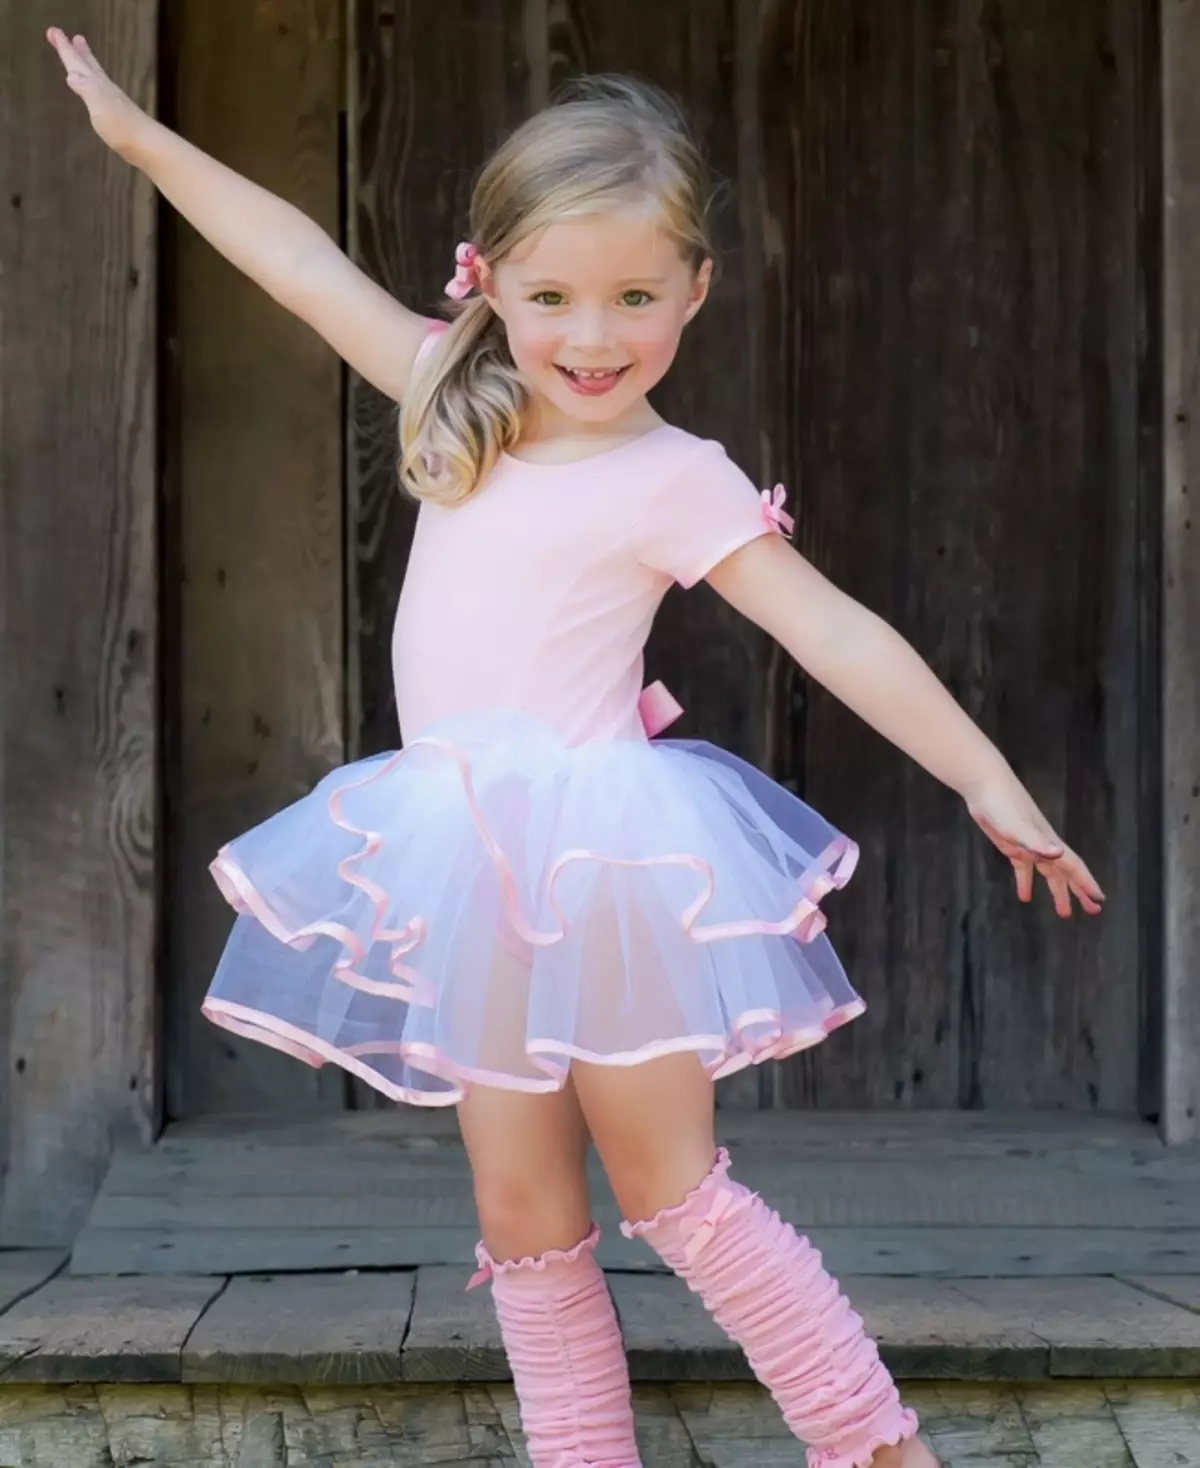 Swimsuit infantil para bailar con saia (45 fotos): Modelos de baile para nenas 13495_43